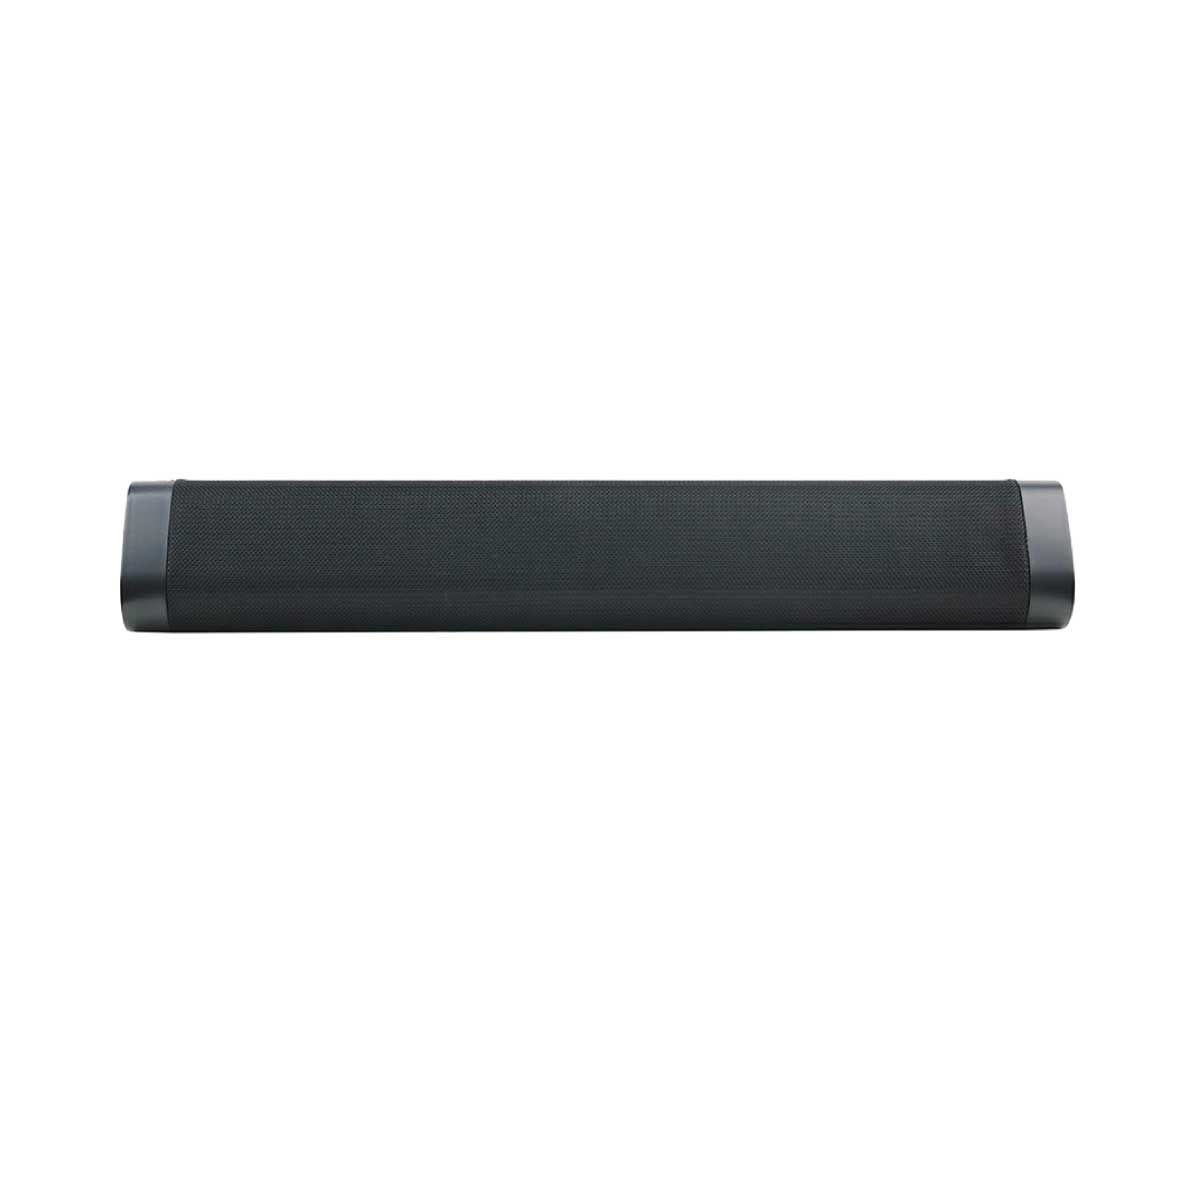 SPEAKER ลำโพงบลูทูธ Wireless Bluetooth 5.0 รุ่น A500 ลำโพงบูลทธูไร้สาย สีดำ